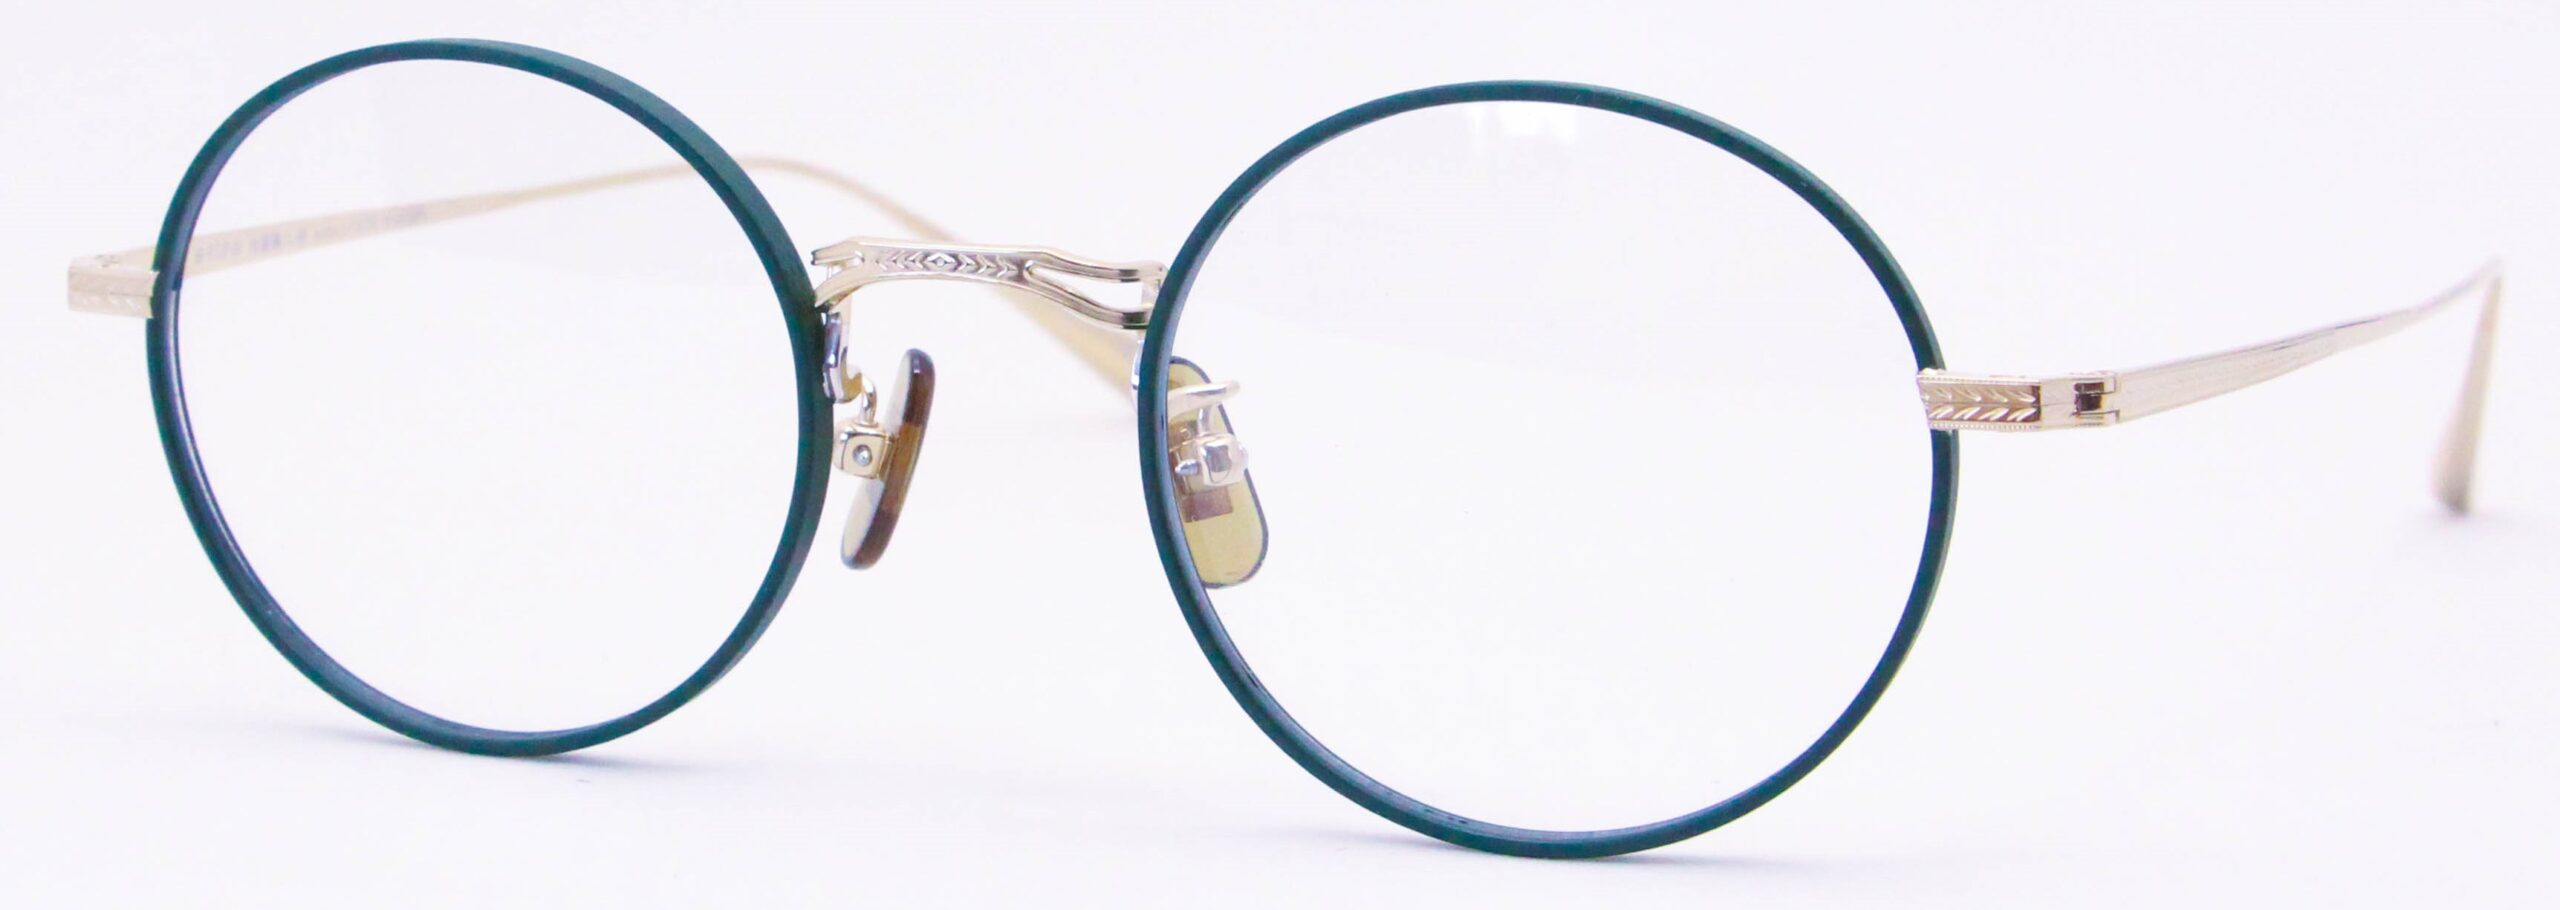 眼鏡のカラータイプC-5 Green-Matt/Gold